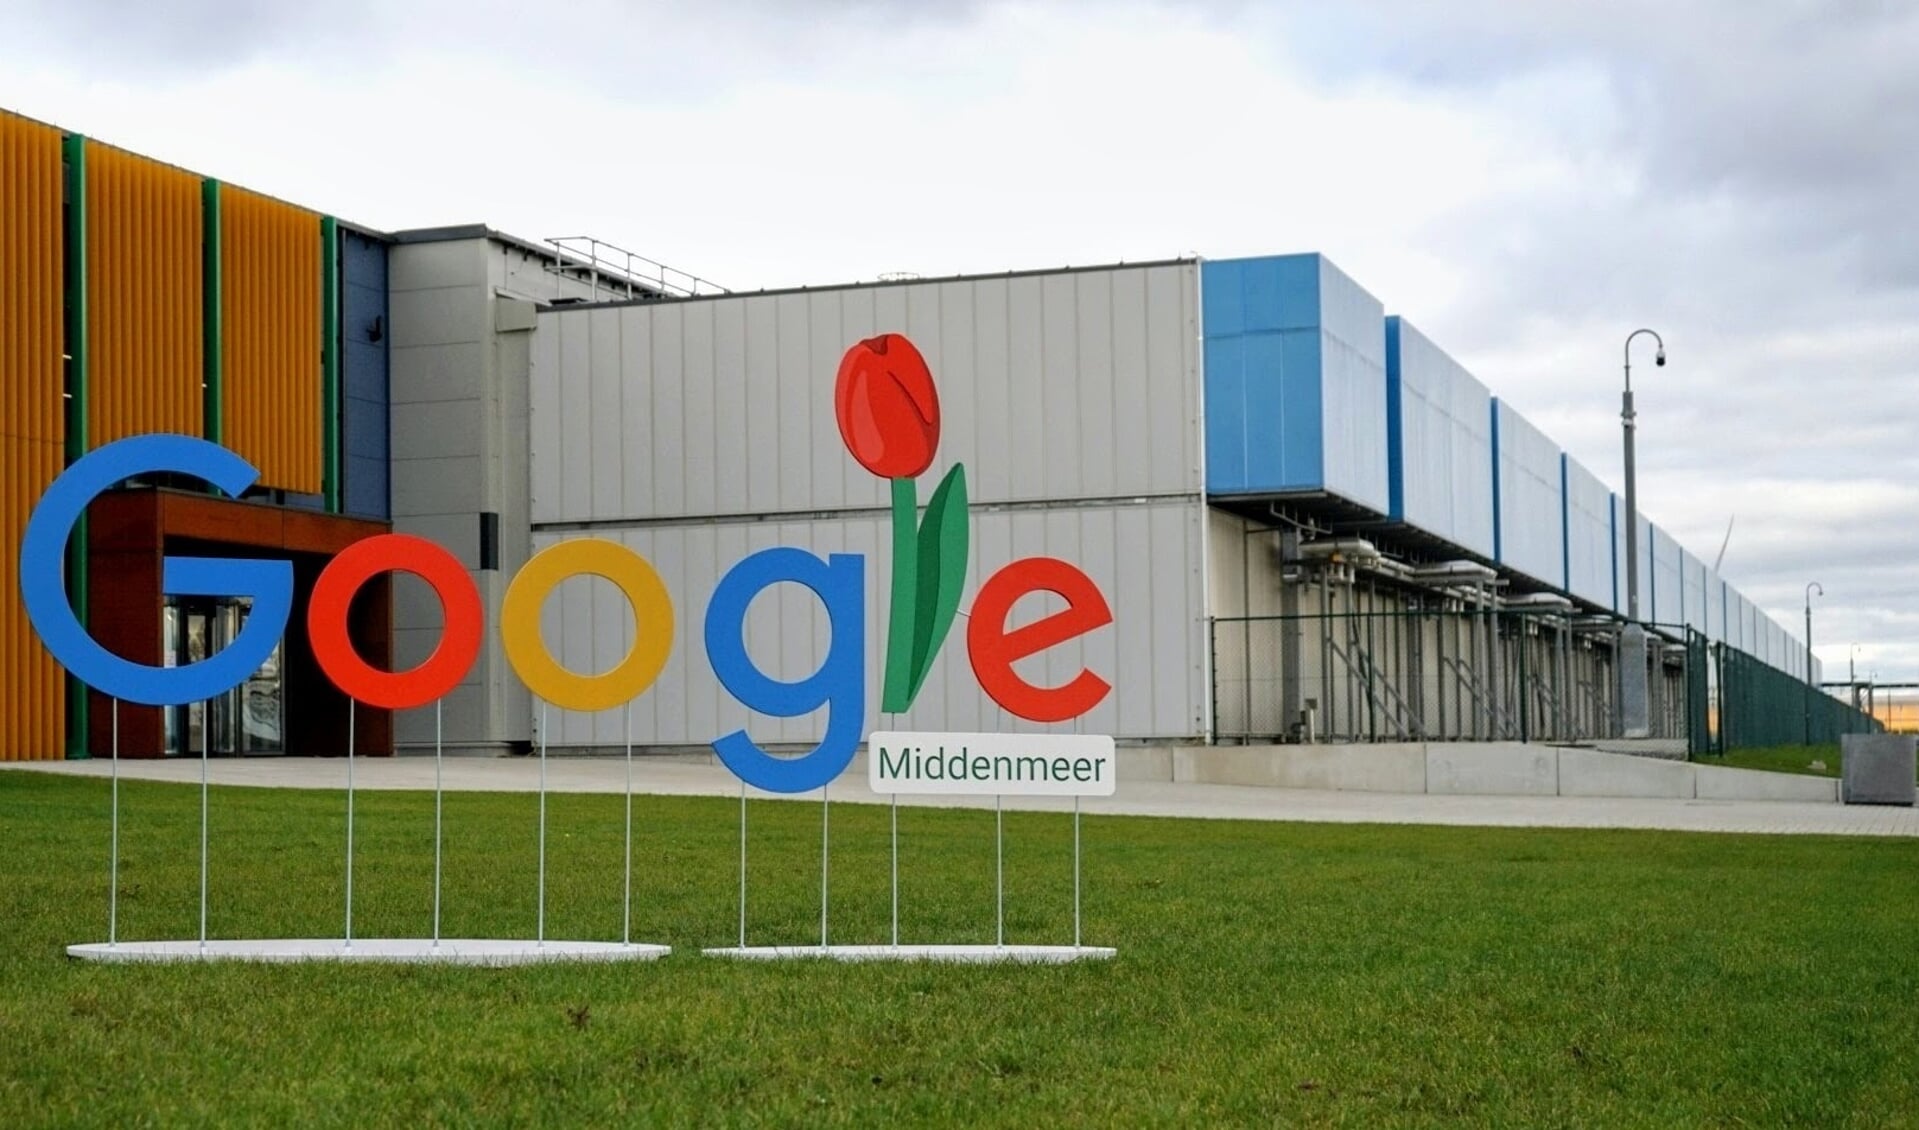 Het datacenter van Google in Middenmeer.